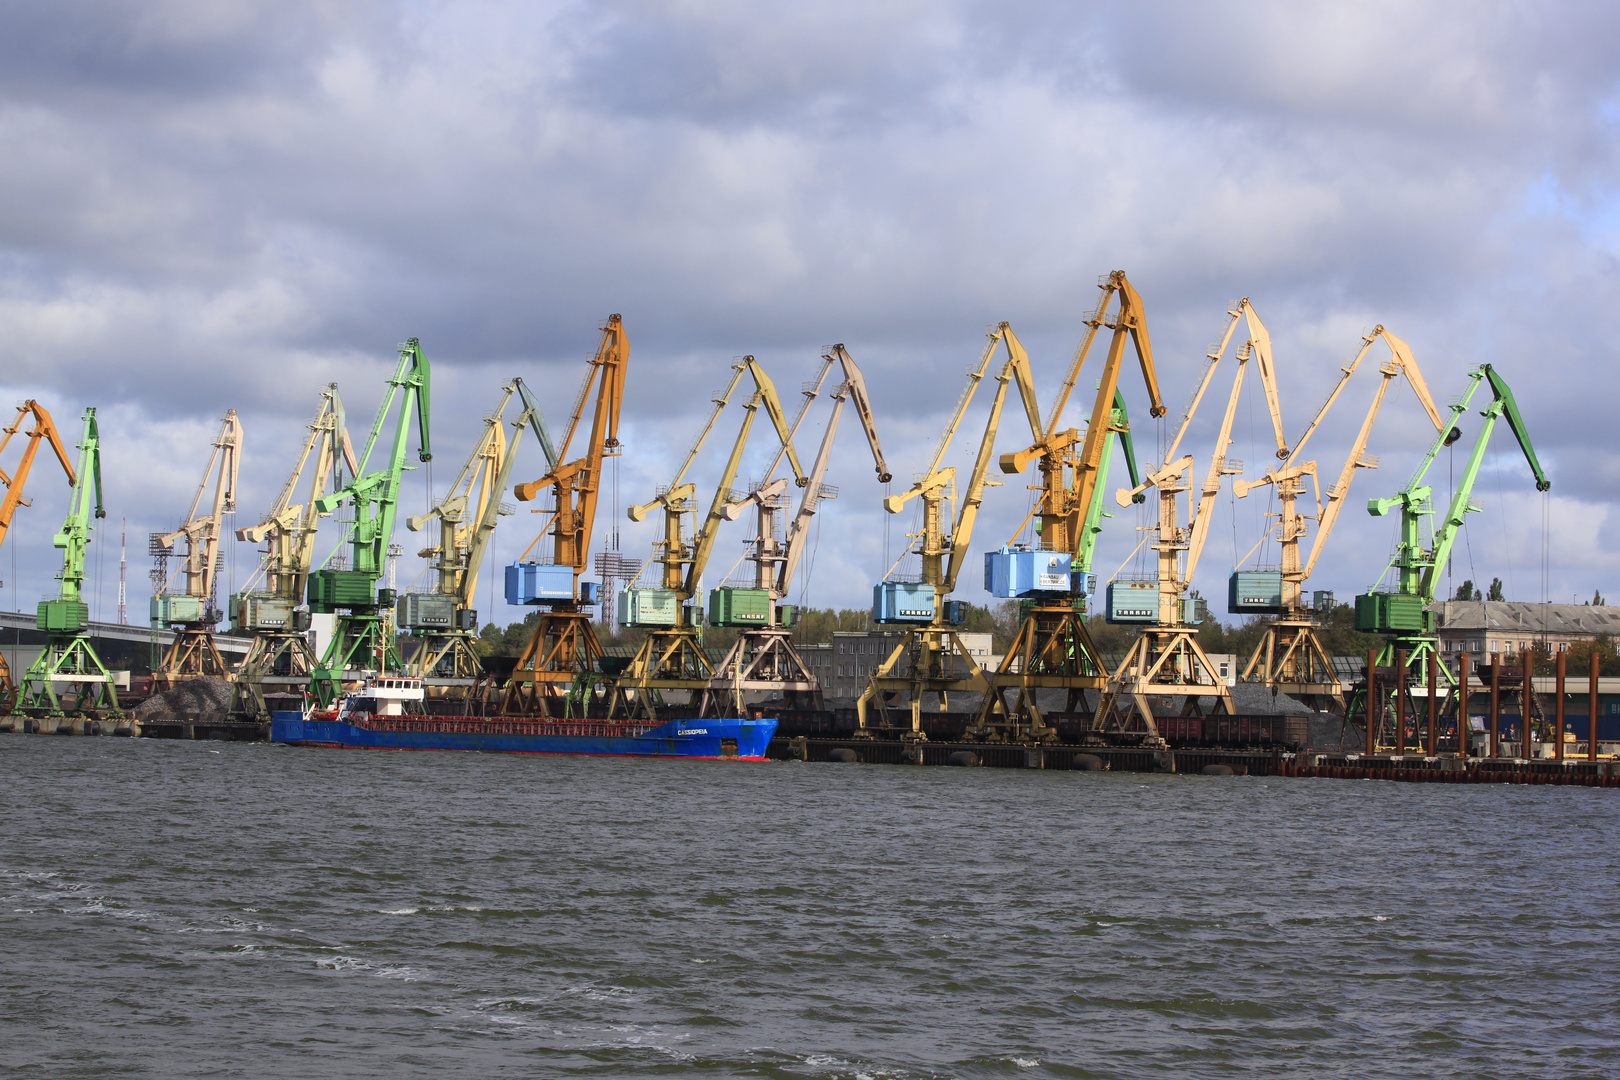 Ladungskräne im Hafen von Klaipeda